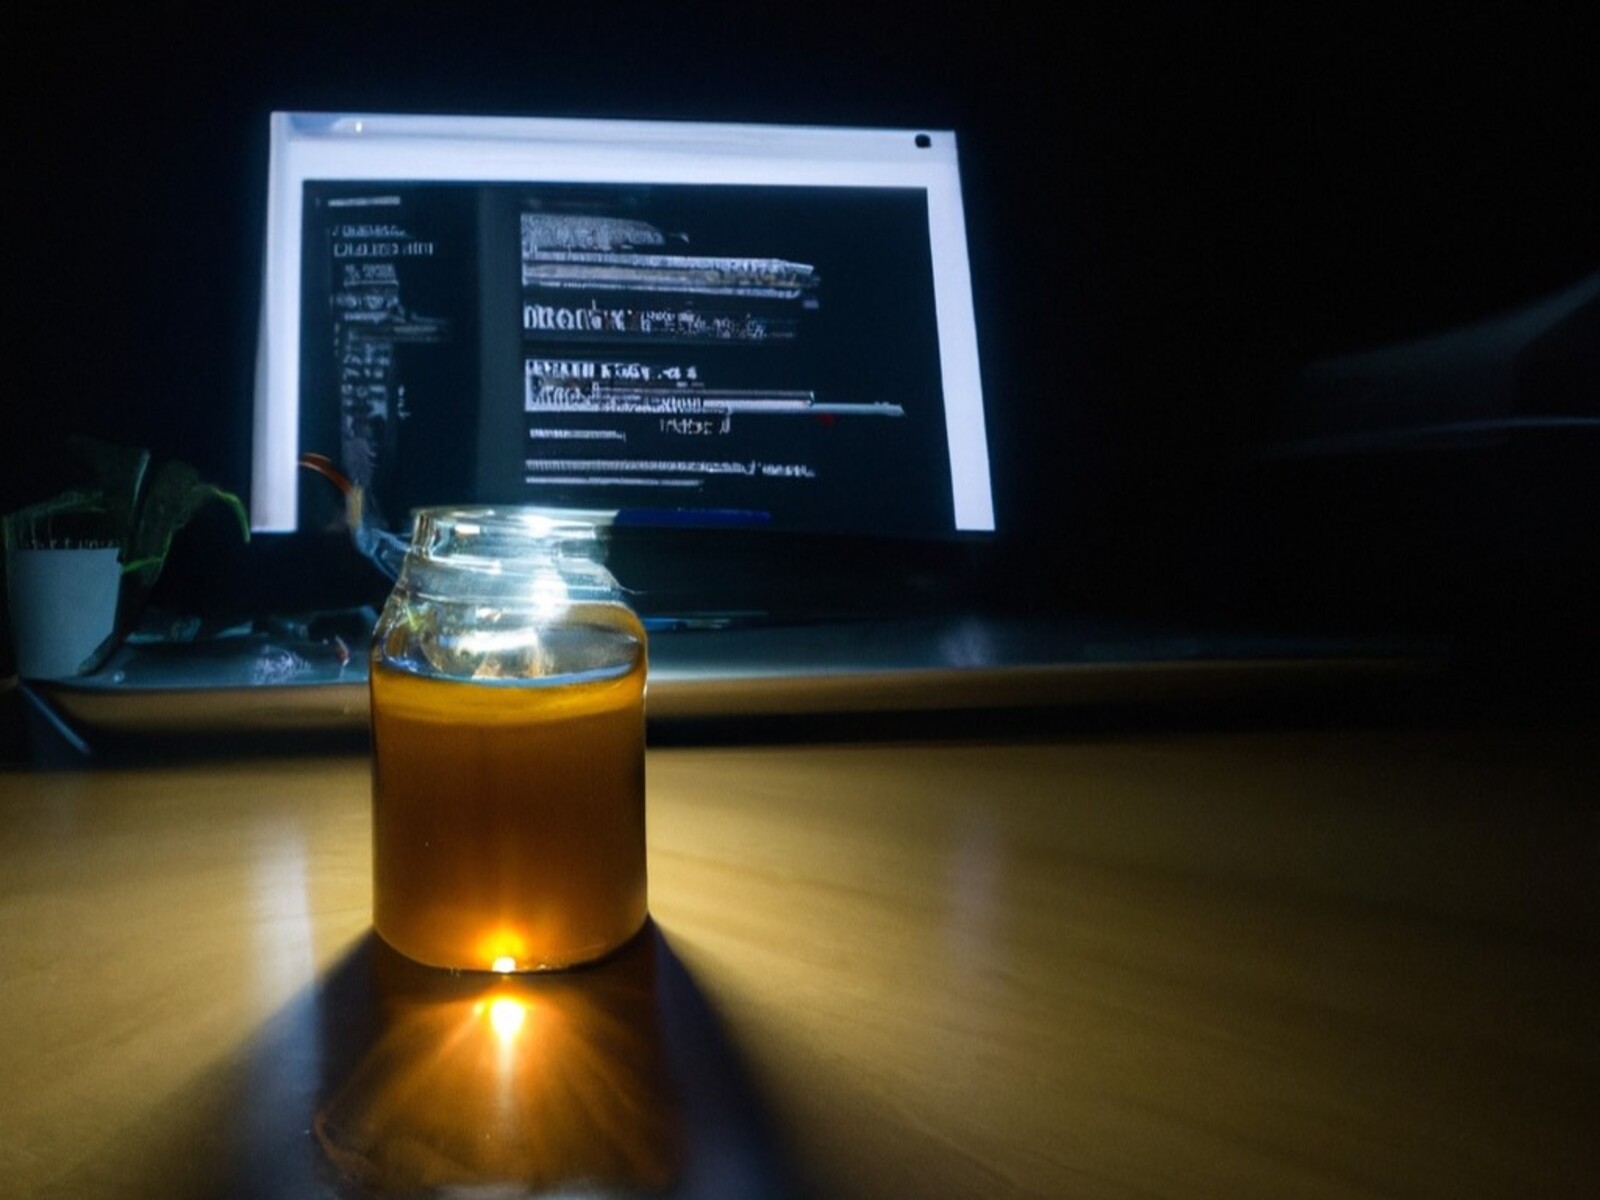 Les forces cyber utilisent des pots de miel pour scruter et piéger les cybercriminels : comment ça marche ?